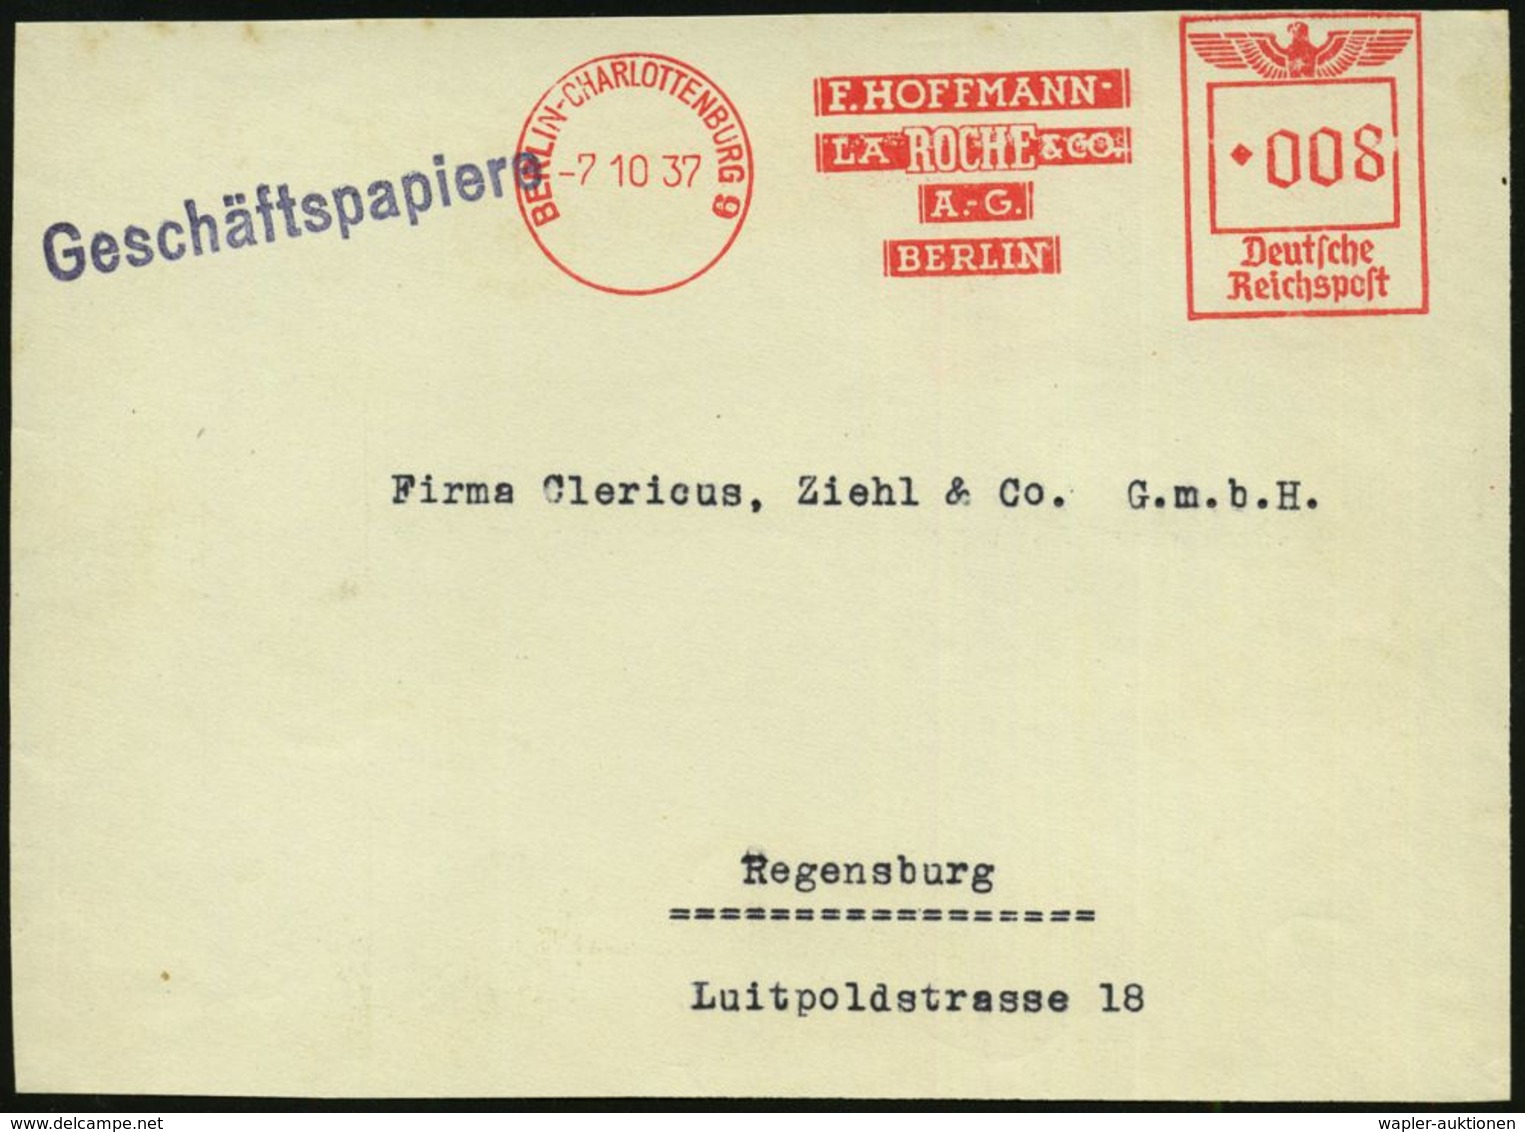 BERLIN-CHARLOTTENBURG 9/ F.HOFFMANN-/ LA ROCHE & CO/ AG 1937 (7.10.) AFS Klar Auf Bedarfs-Vorderseite (Dü.E-5DG) - Gesch - Chimie